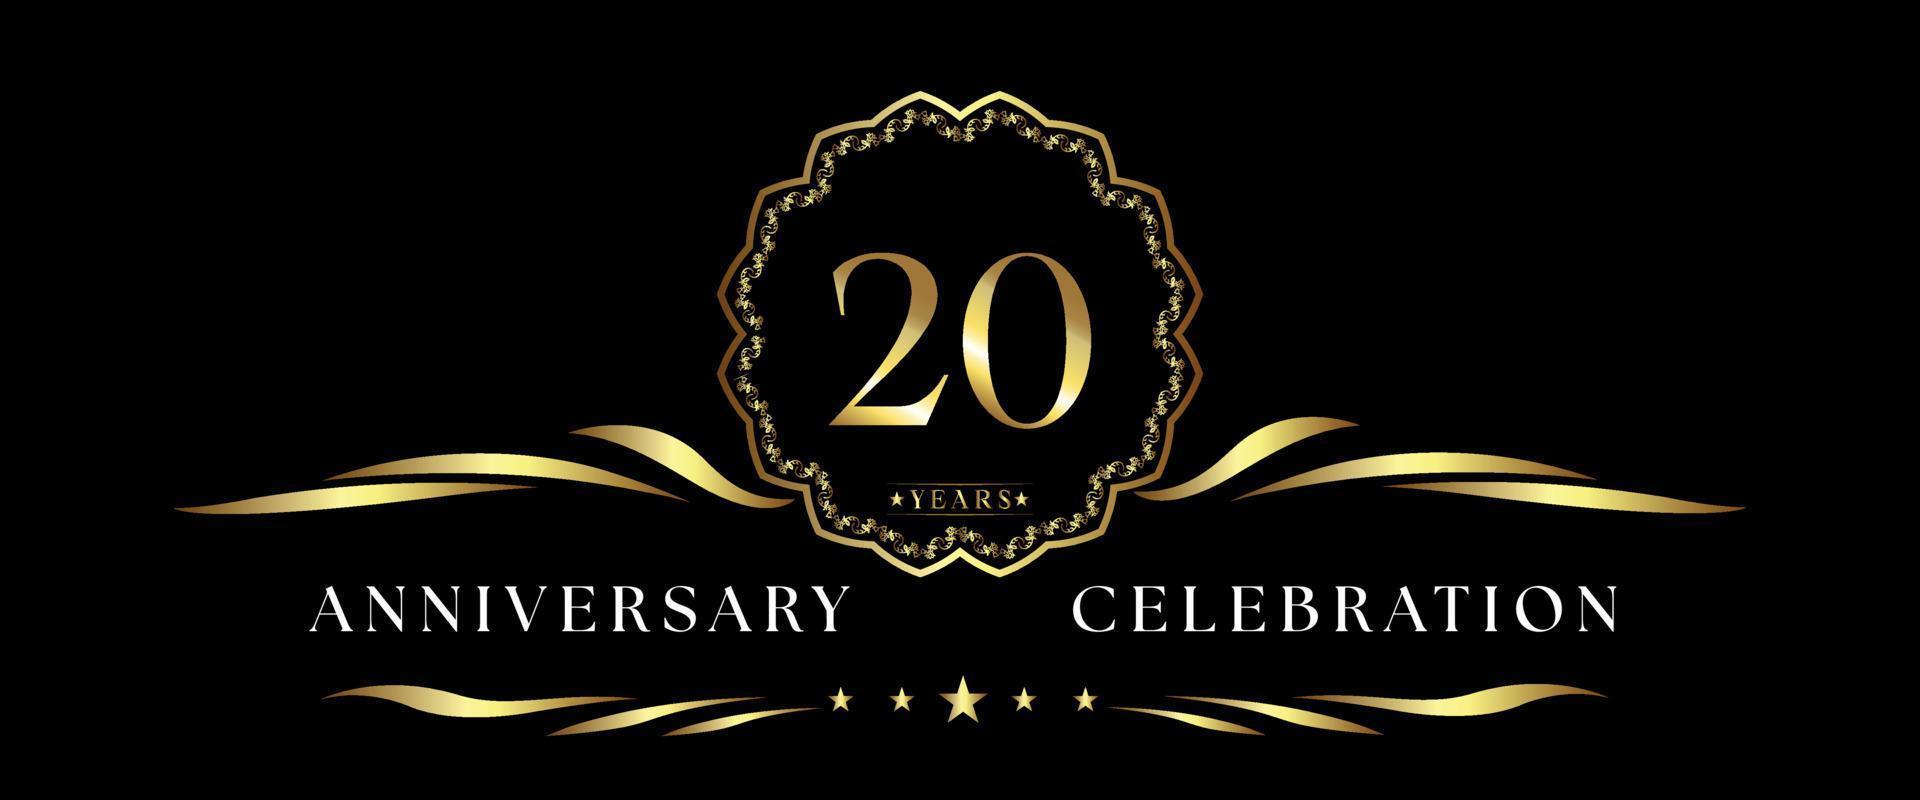 Celebración del aniversario de 20 años con marco decorativo dorado aislado en fondo negro. diseño vectorial para tarjetas de felicitación, fiesta de cumpleaños, boda, fiesta de eventos, ceremonia. Logotipo de aniversario de 20 años. vector